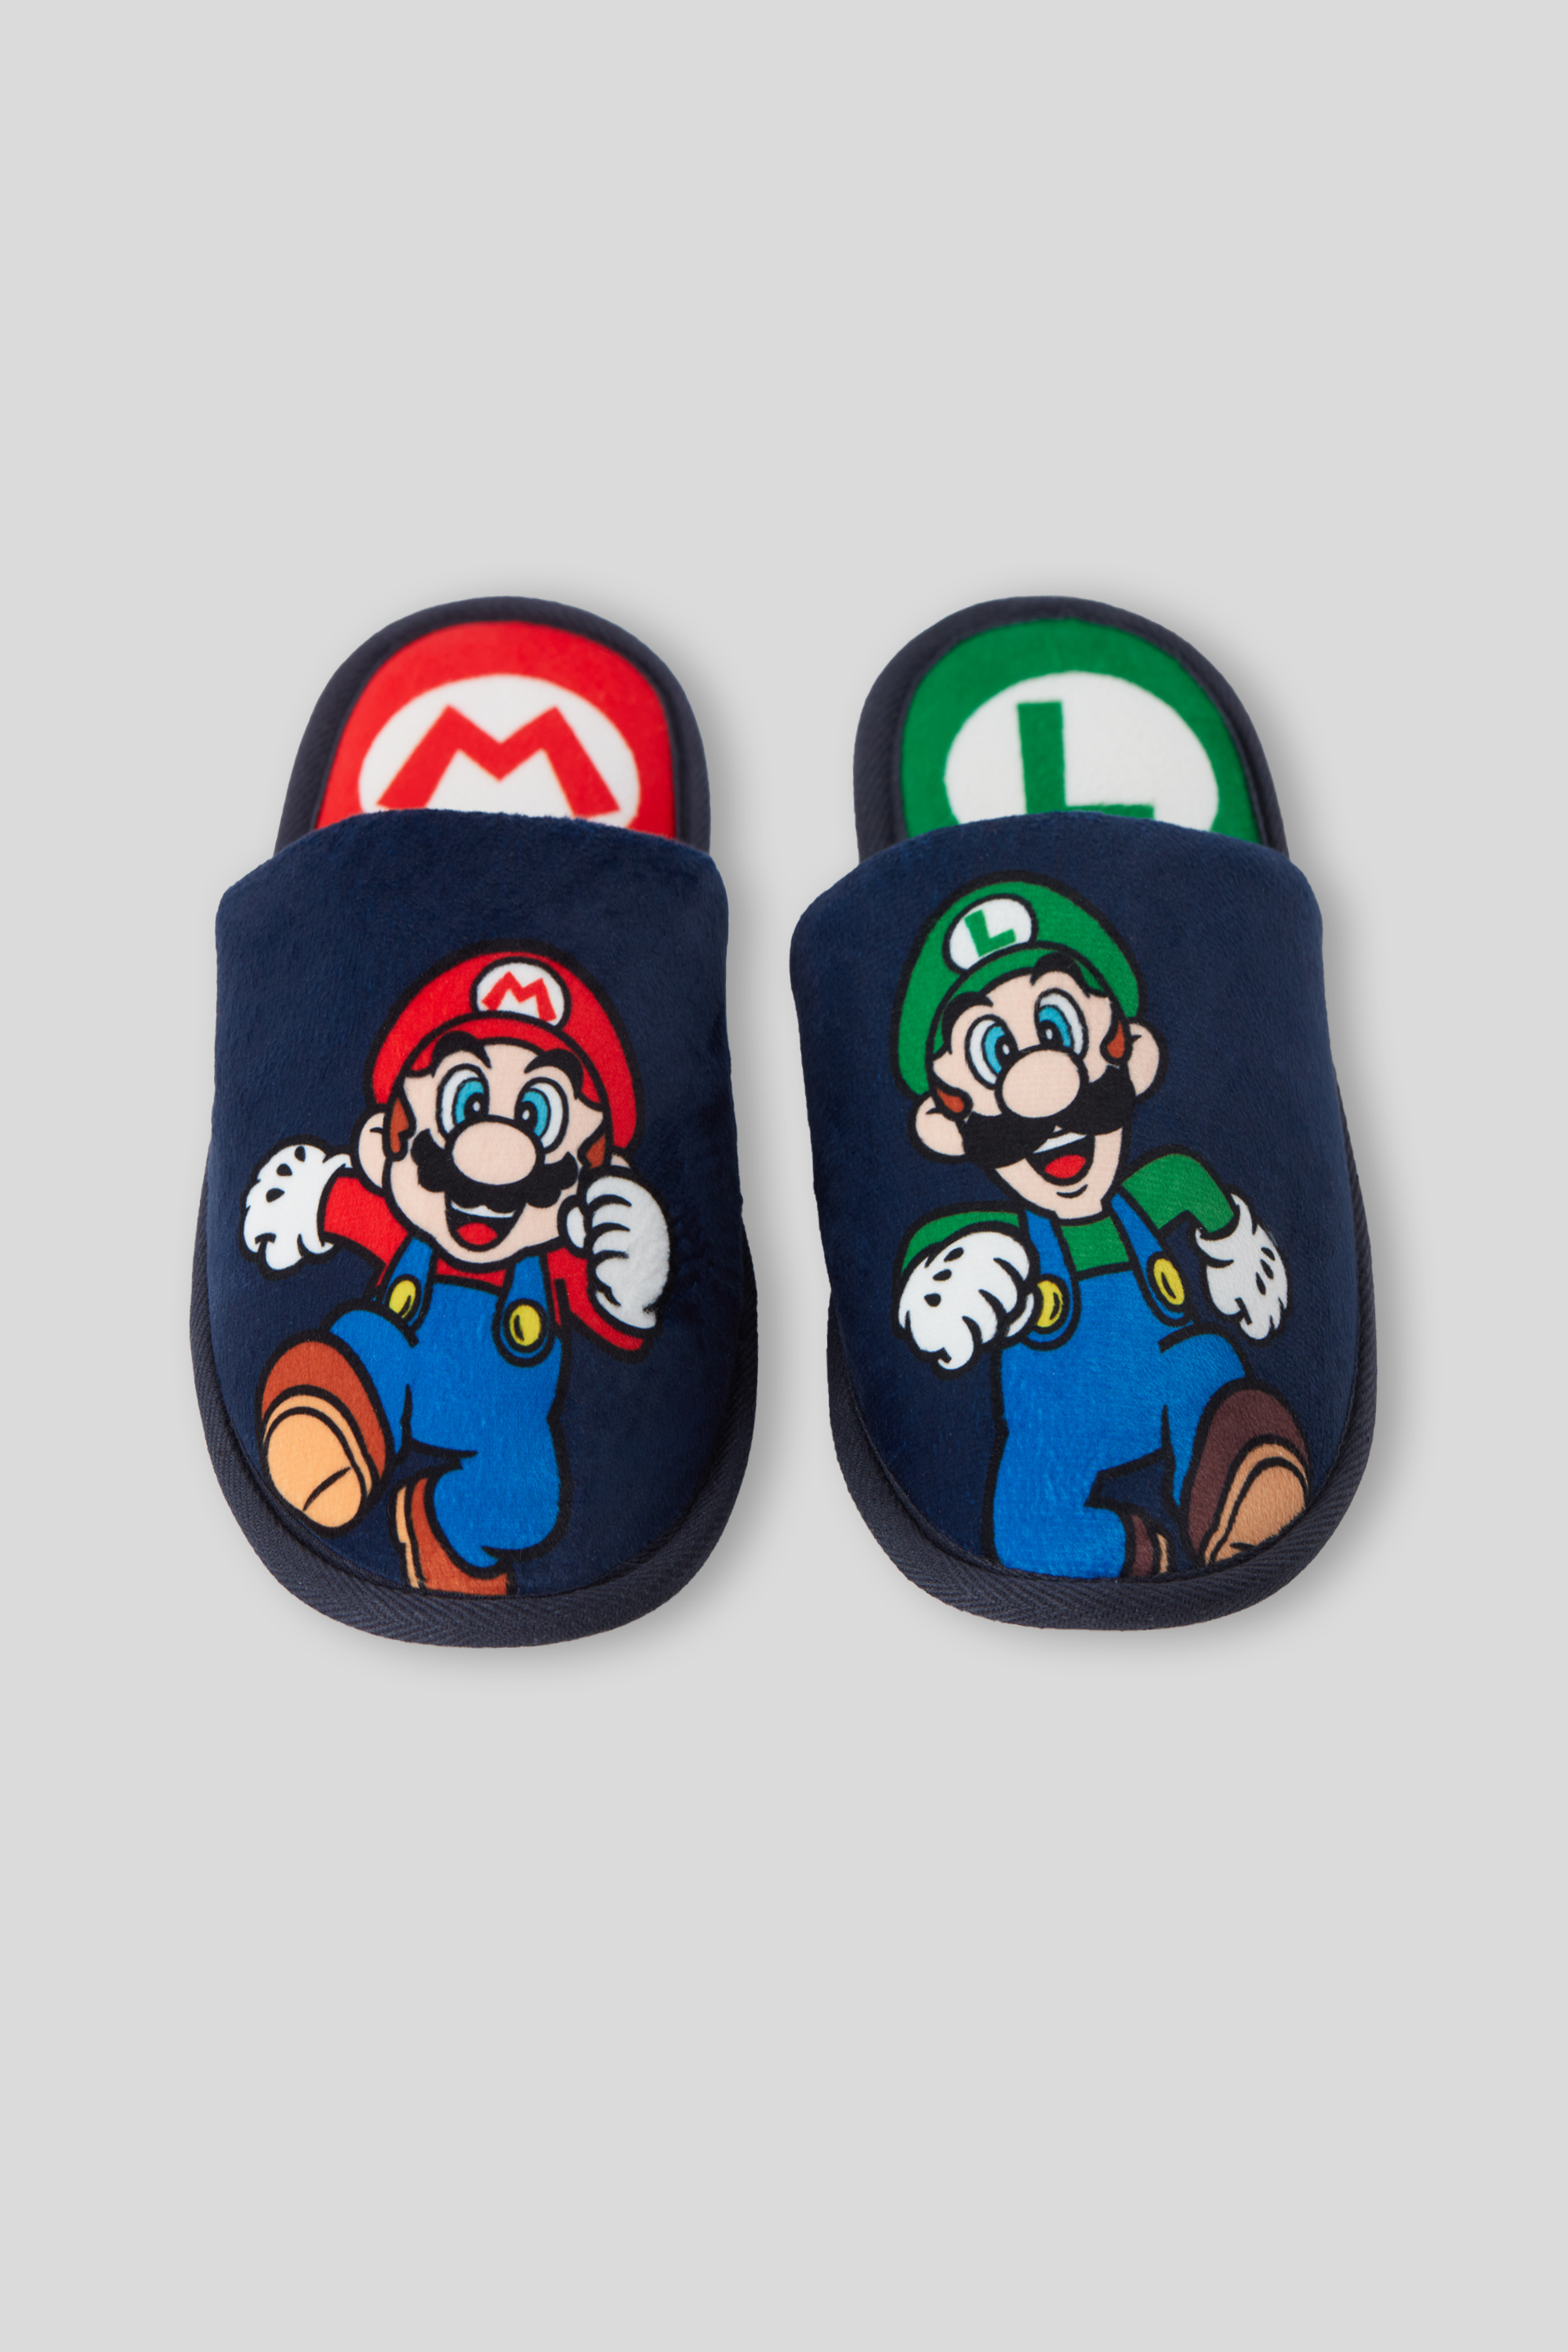 Super Mario Bros Chausson lot 2 paires pantoufles taille unique 27cm luigi  mario